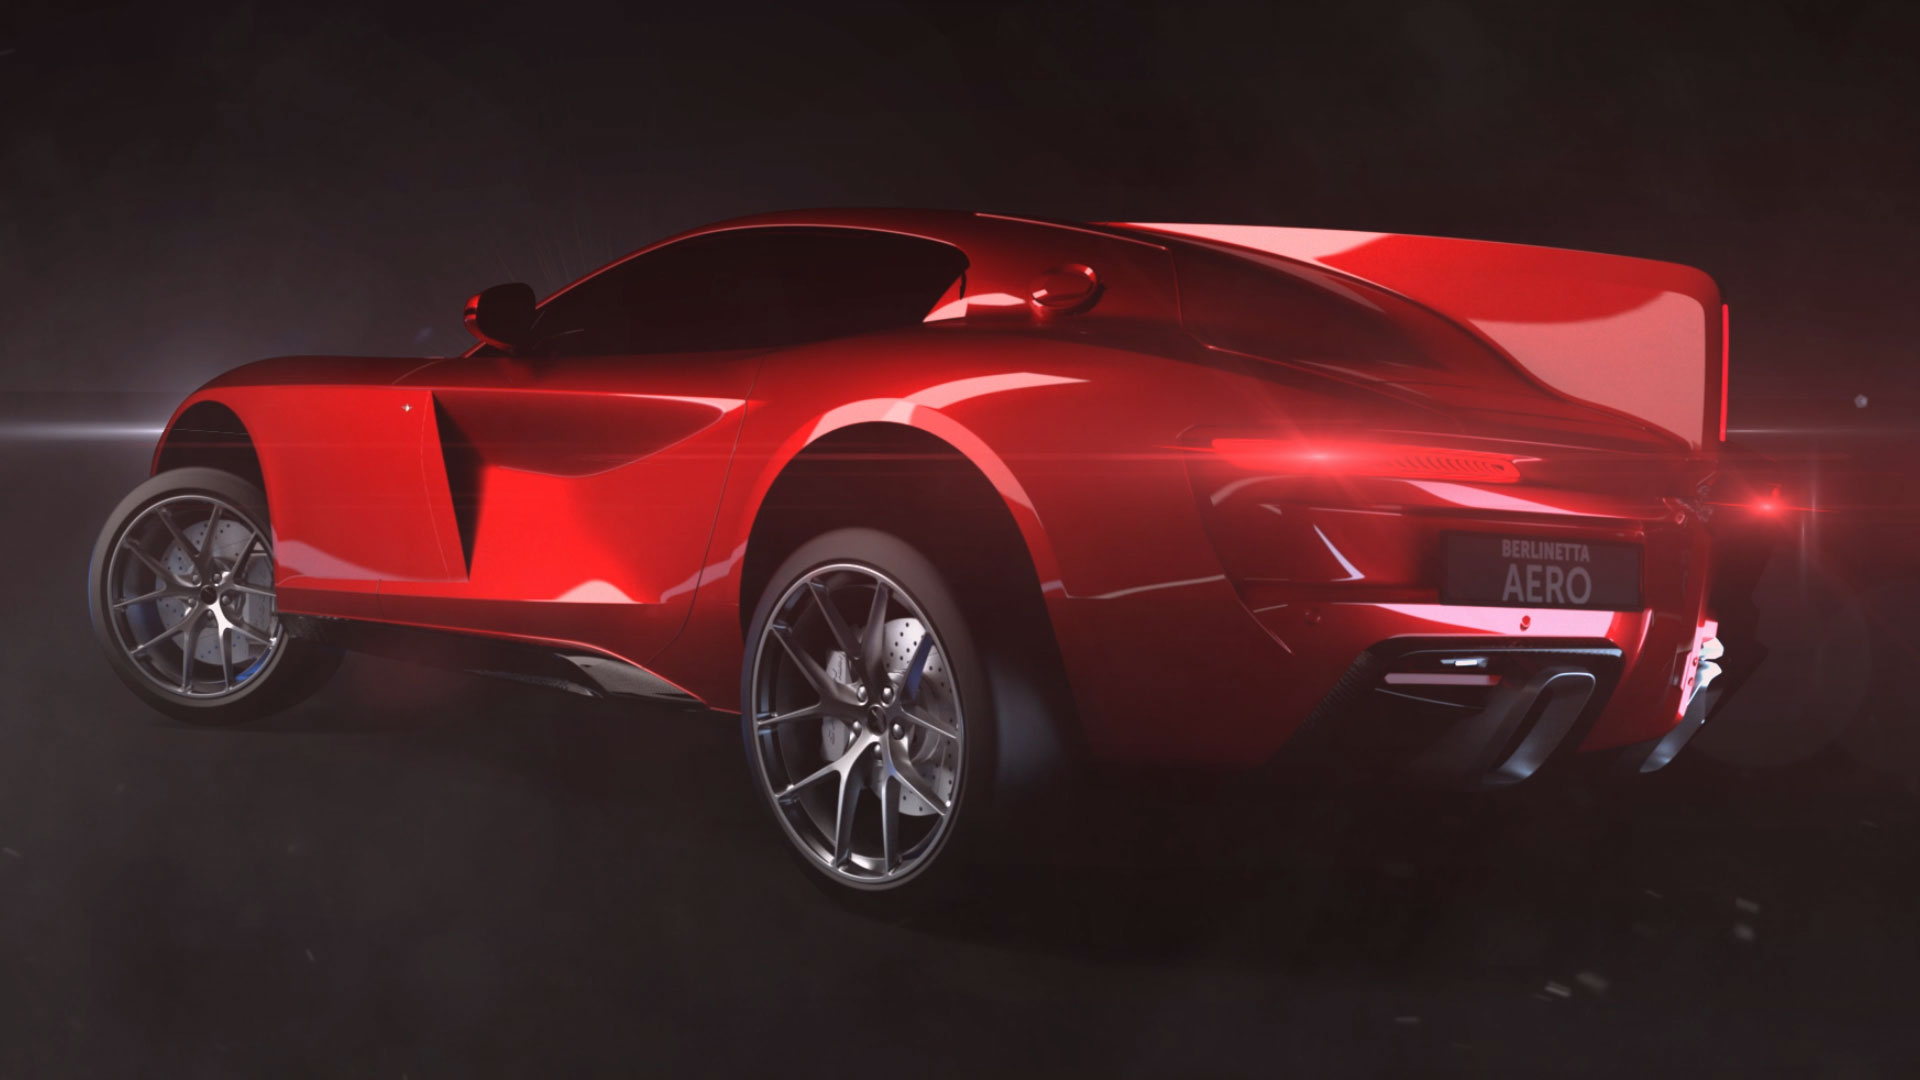 Touring Superleggera - Berlinetta Aero Promo - Video 3D per sponsorizzare la propria versione della Ferrari Riva - Anno di produzione 2019